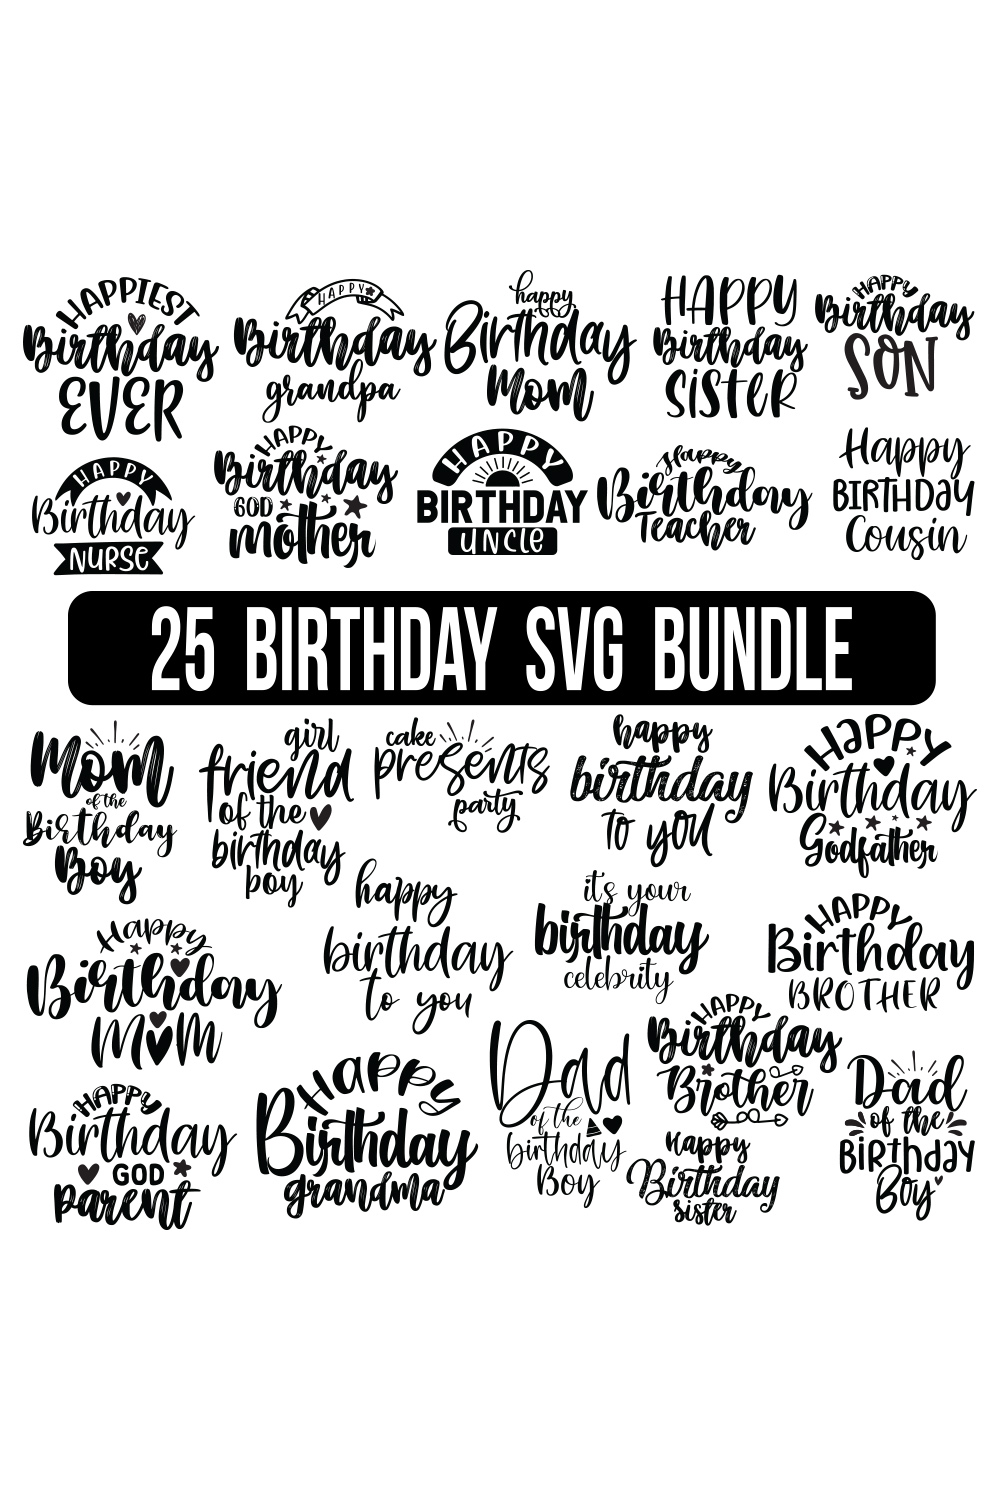 Birthday SVG Bundle, Birthday SVG, Birthday Girl svg, Birthday Shirt SVG, Gift for Birthday svg, Wishes for Birthday, Birthday Bundle SVG, pinterest preview image.